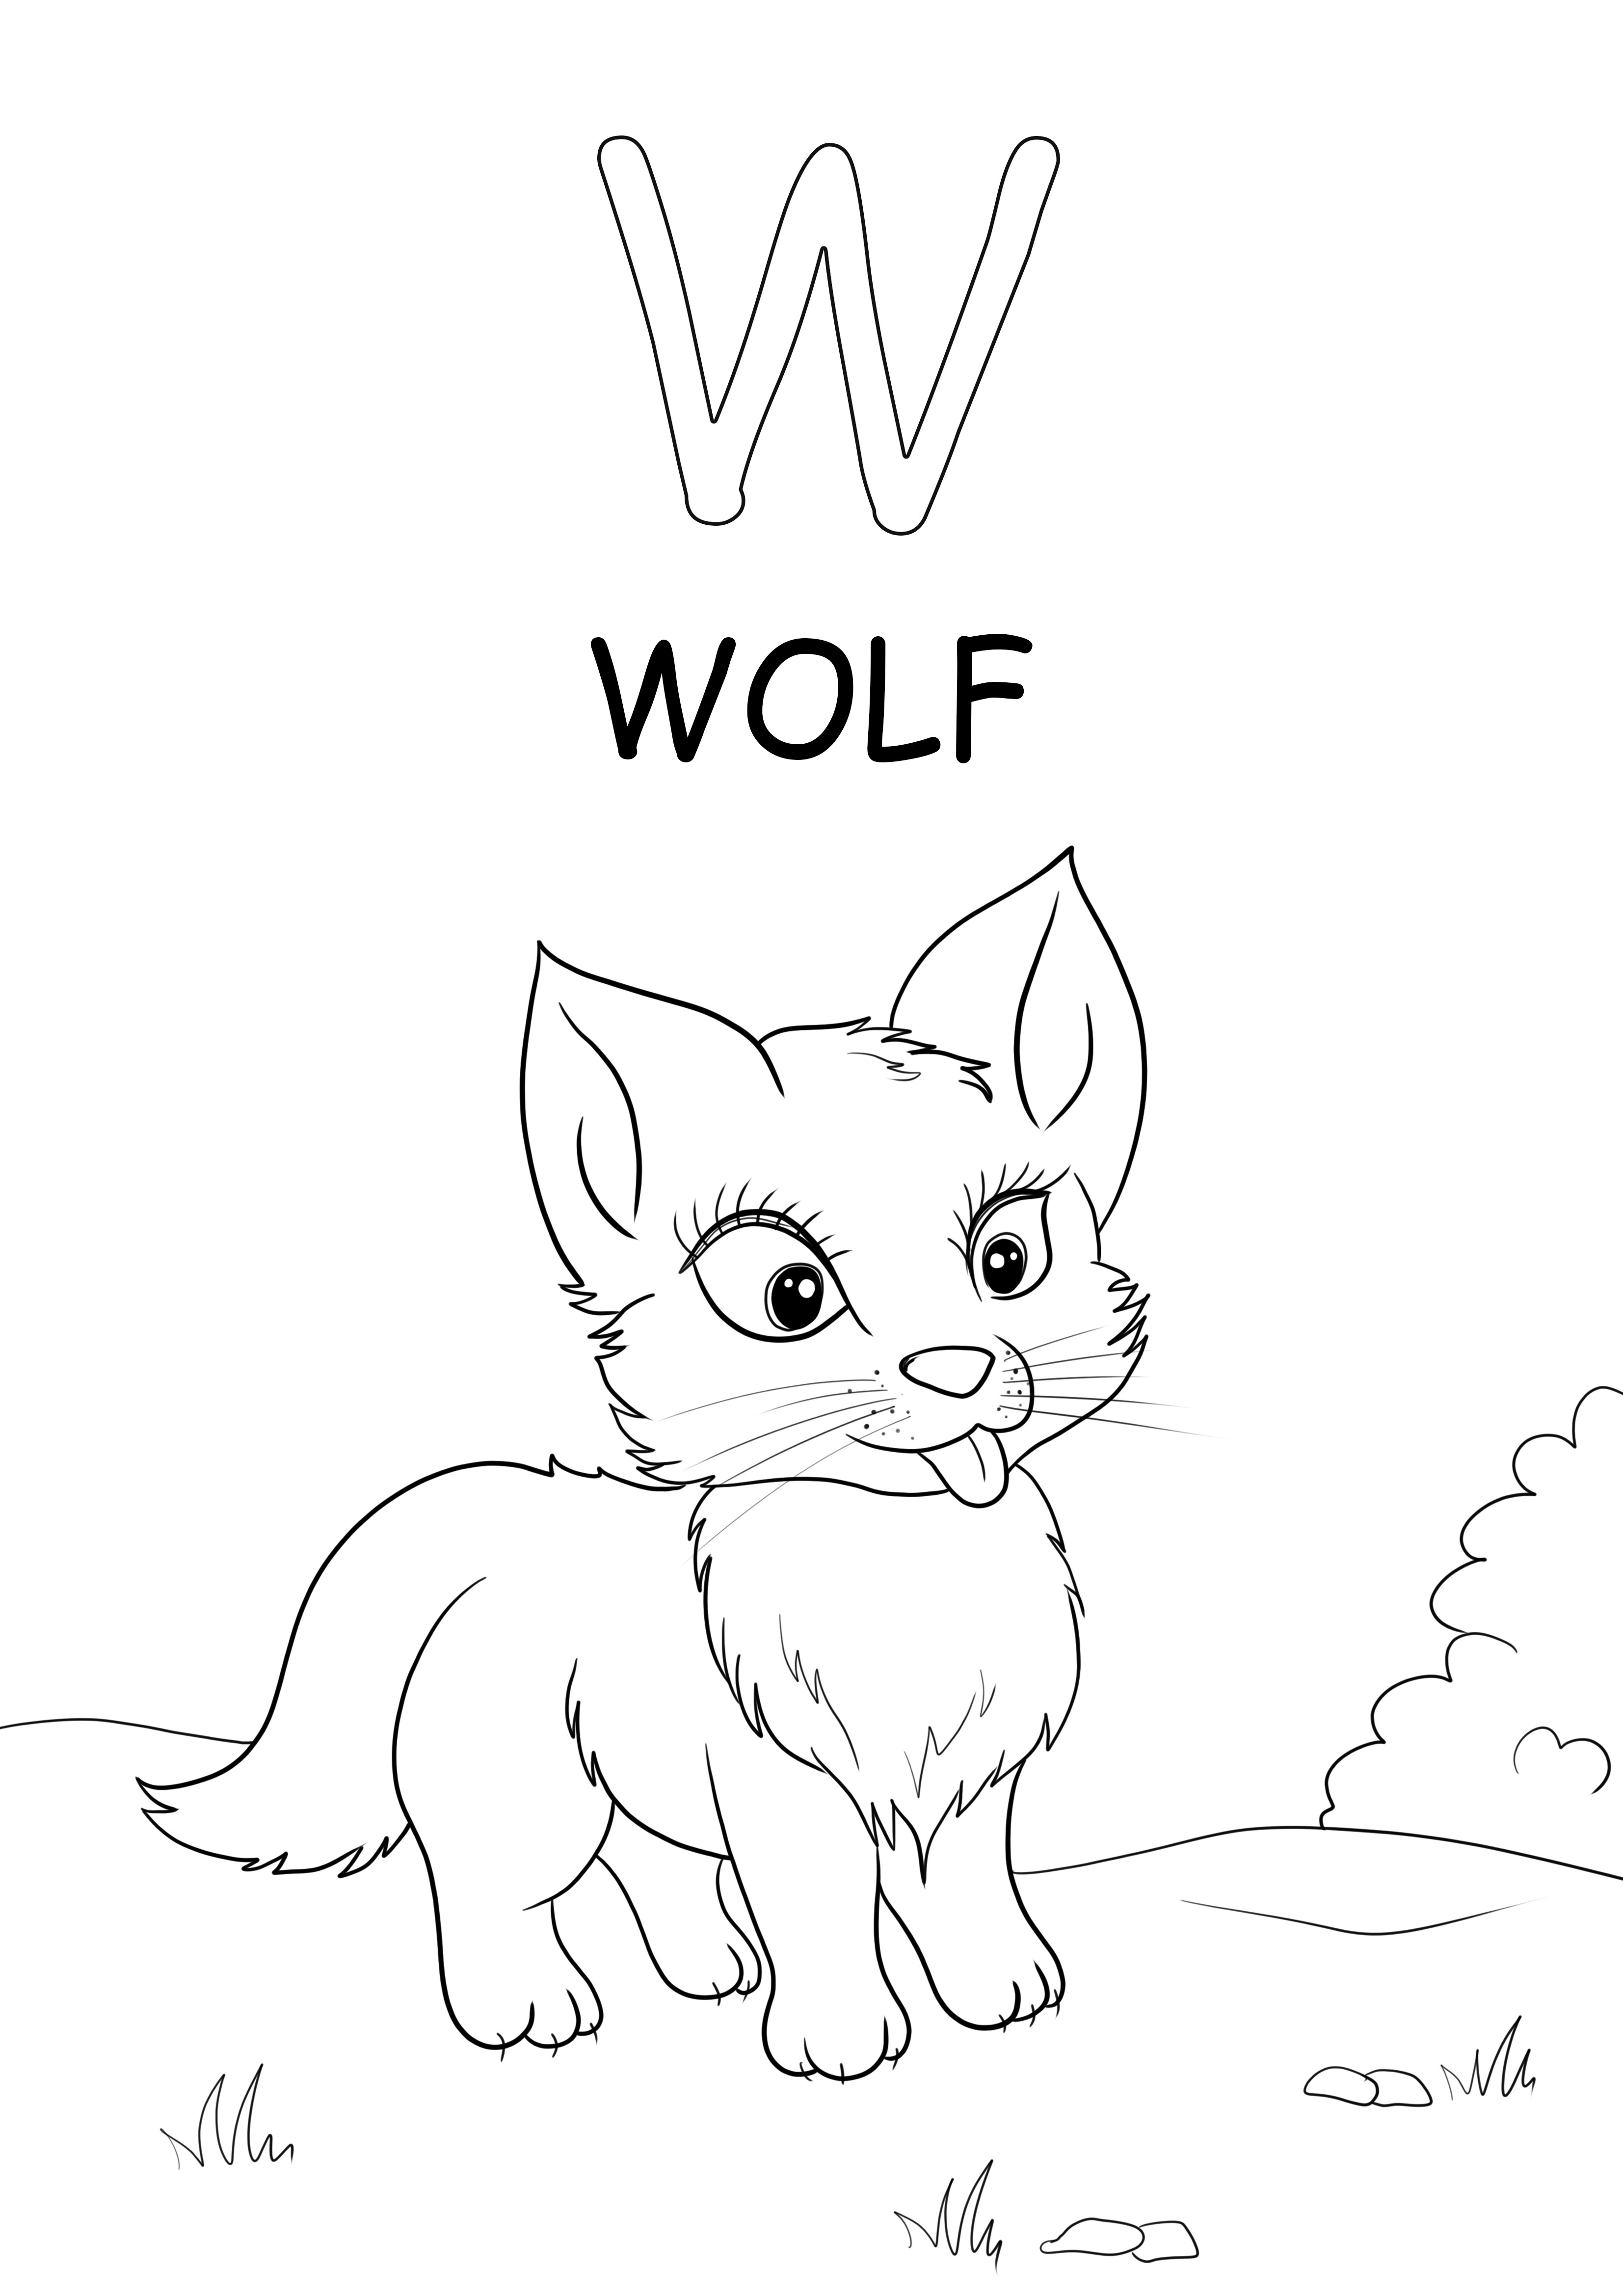 Wielkie słowo-wilk zaczyna się od litery W, którą można swobodnie pokolorować i wydrukować